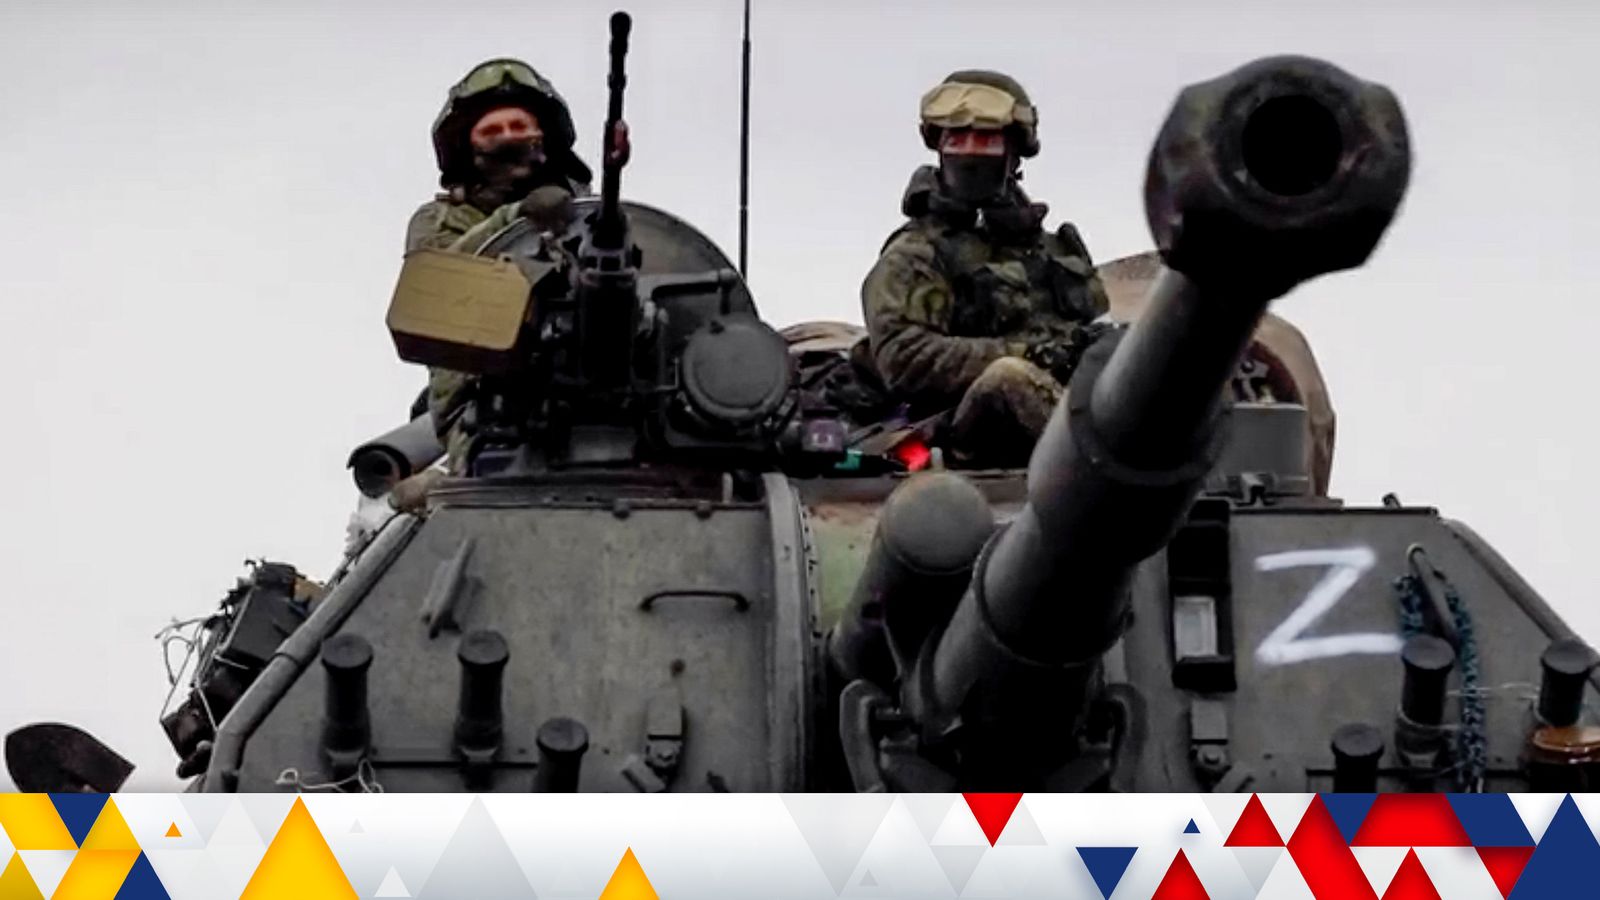 Guerra in Ucraina: Mosca afferma di aver trovato armi biologiche in Ucraina – ma gli Stati Uniti respingono le accuse definendole una “propaganda ridicola” |  notizie dal mondo